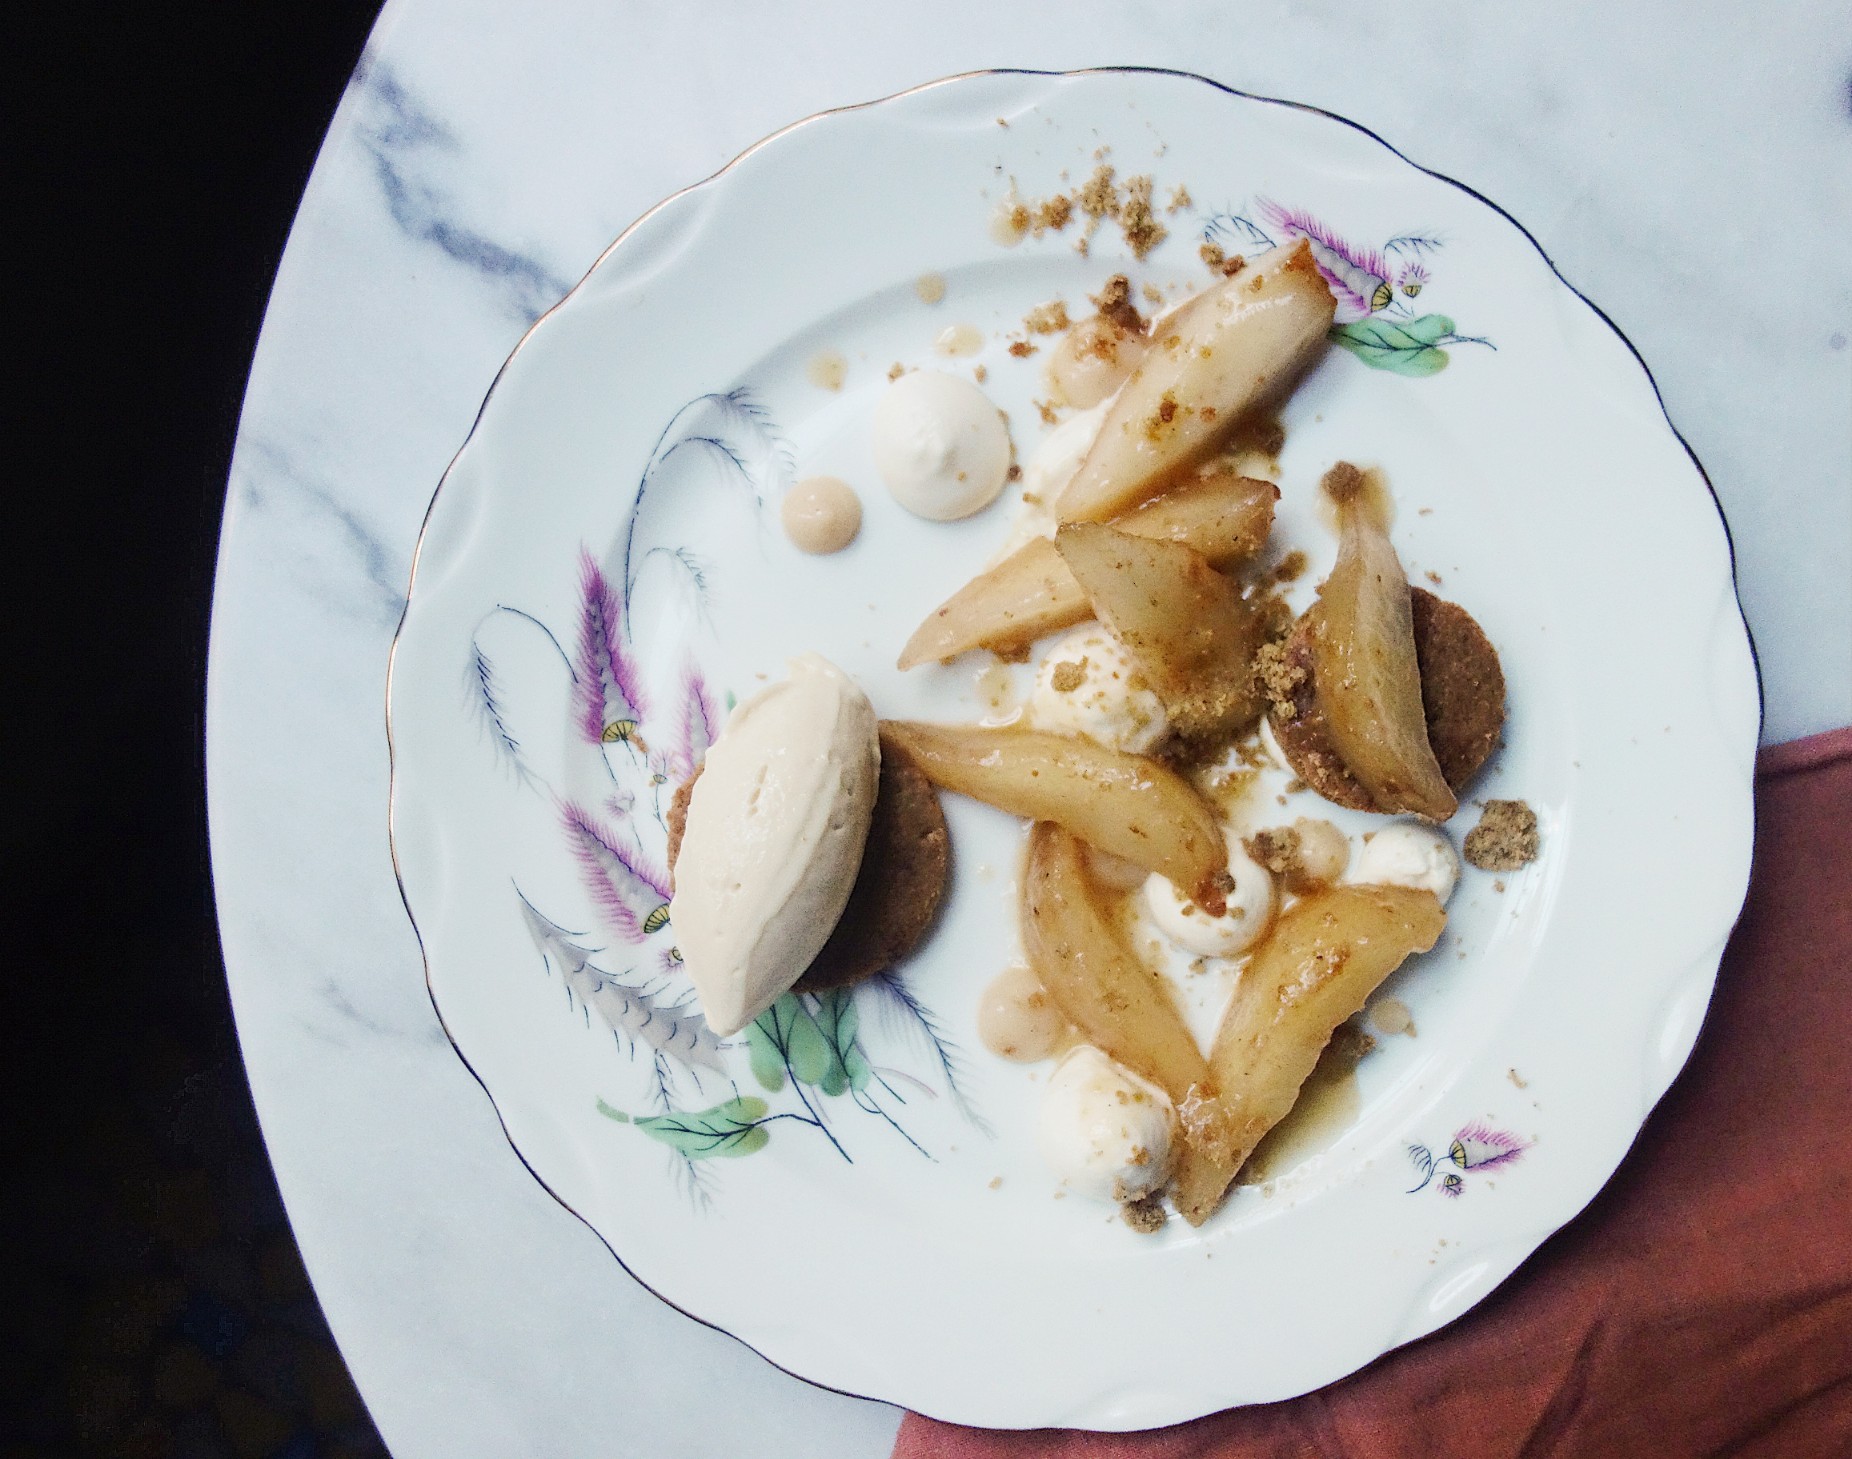 Poire glacée à la sauge, sablé aux amandes et formage blanc du restaurant Les Résistants à Paris